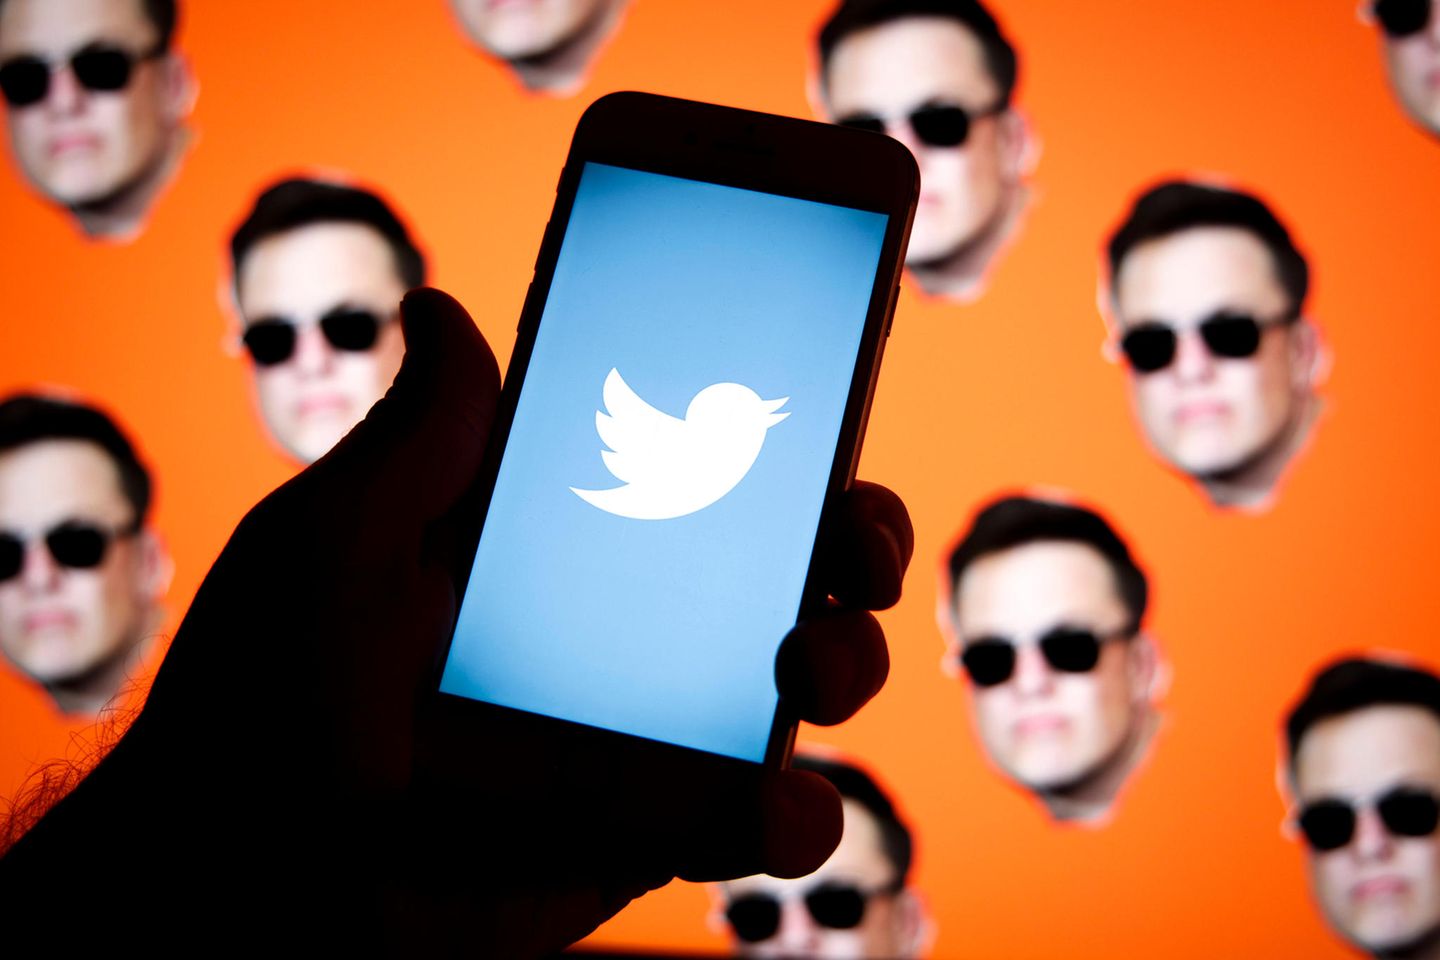 Das Soziale Netzwerk Twitter wurde zuletzt von Elon Musk aufgekauft. Der Tesla-Chef verordnete dem Konzern direkt einmal einen Schrumpfkurs